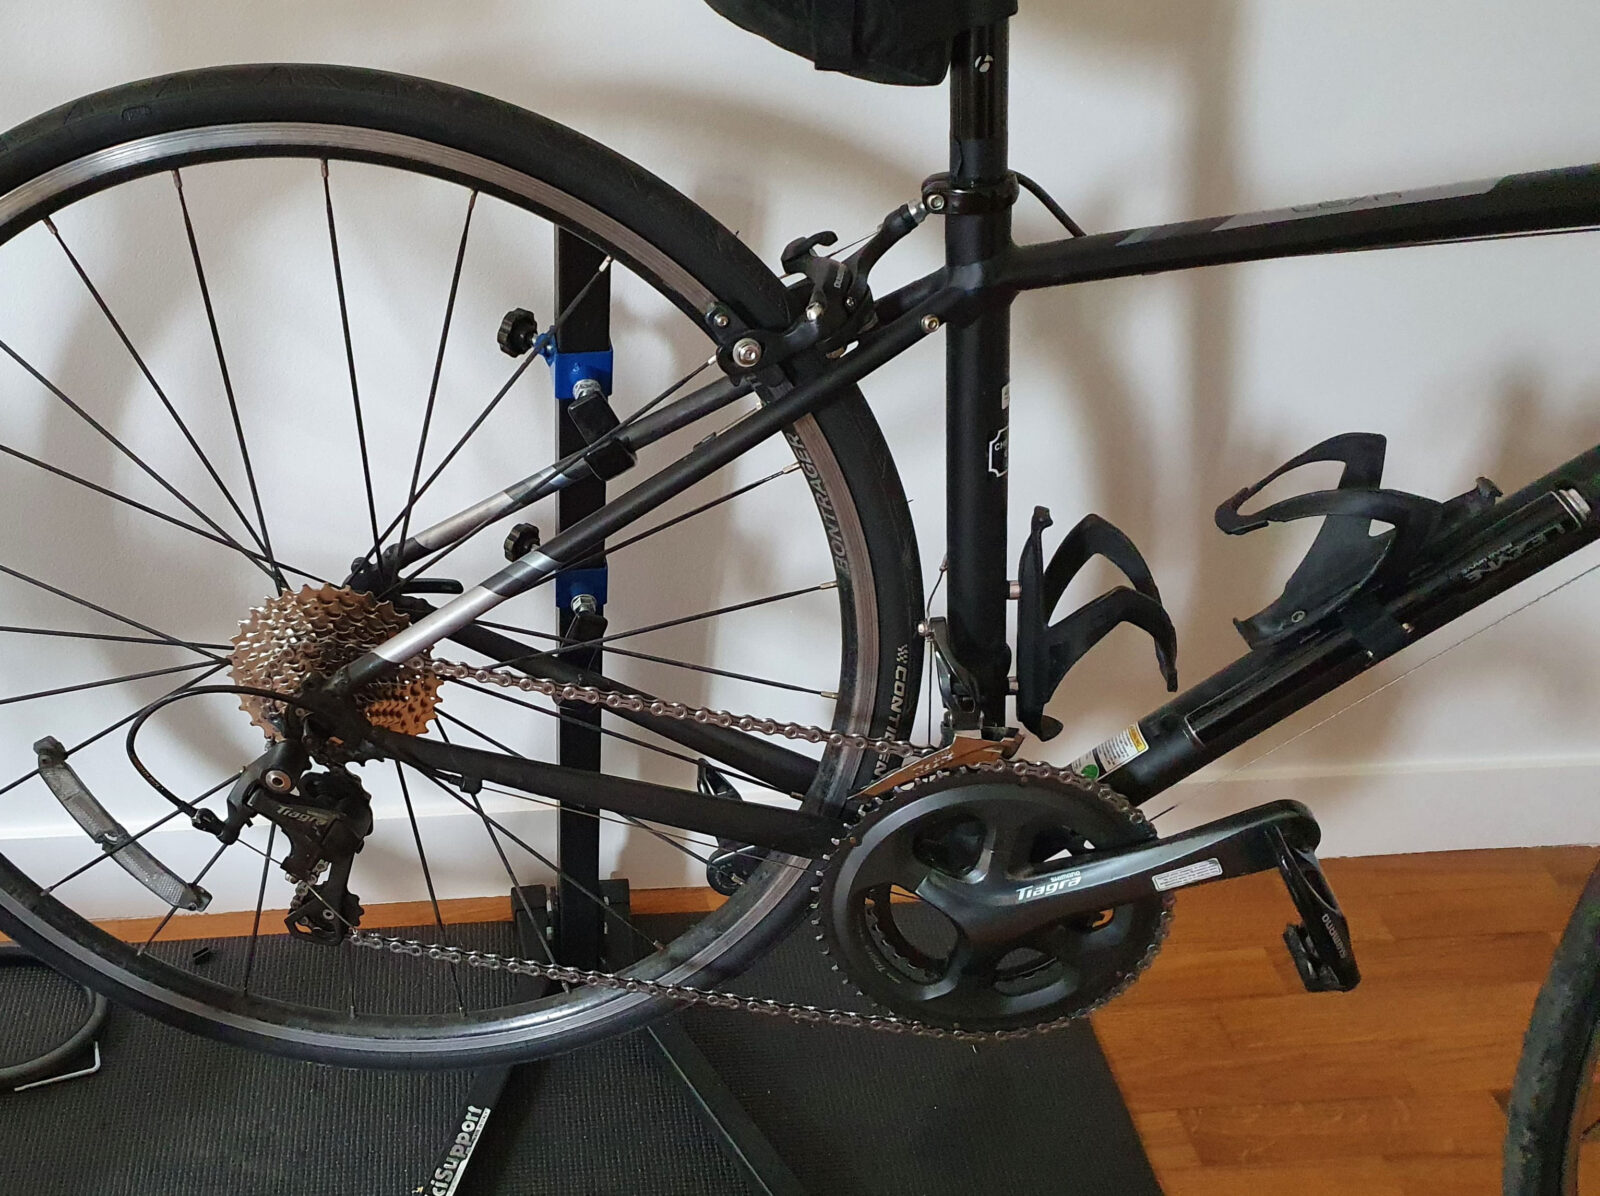 Bike reassembled after removing dork disc